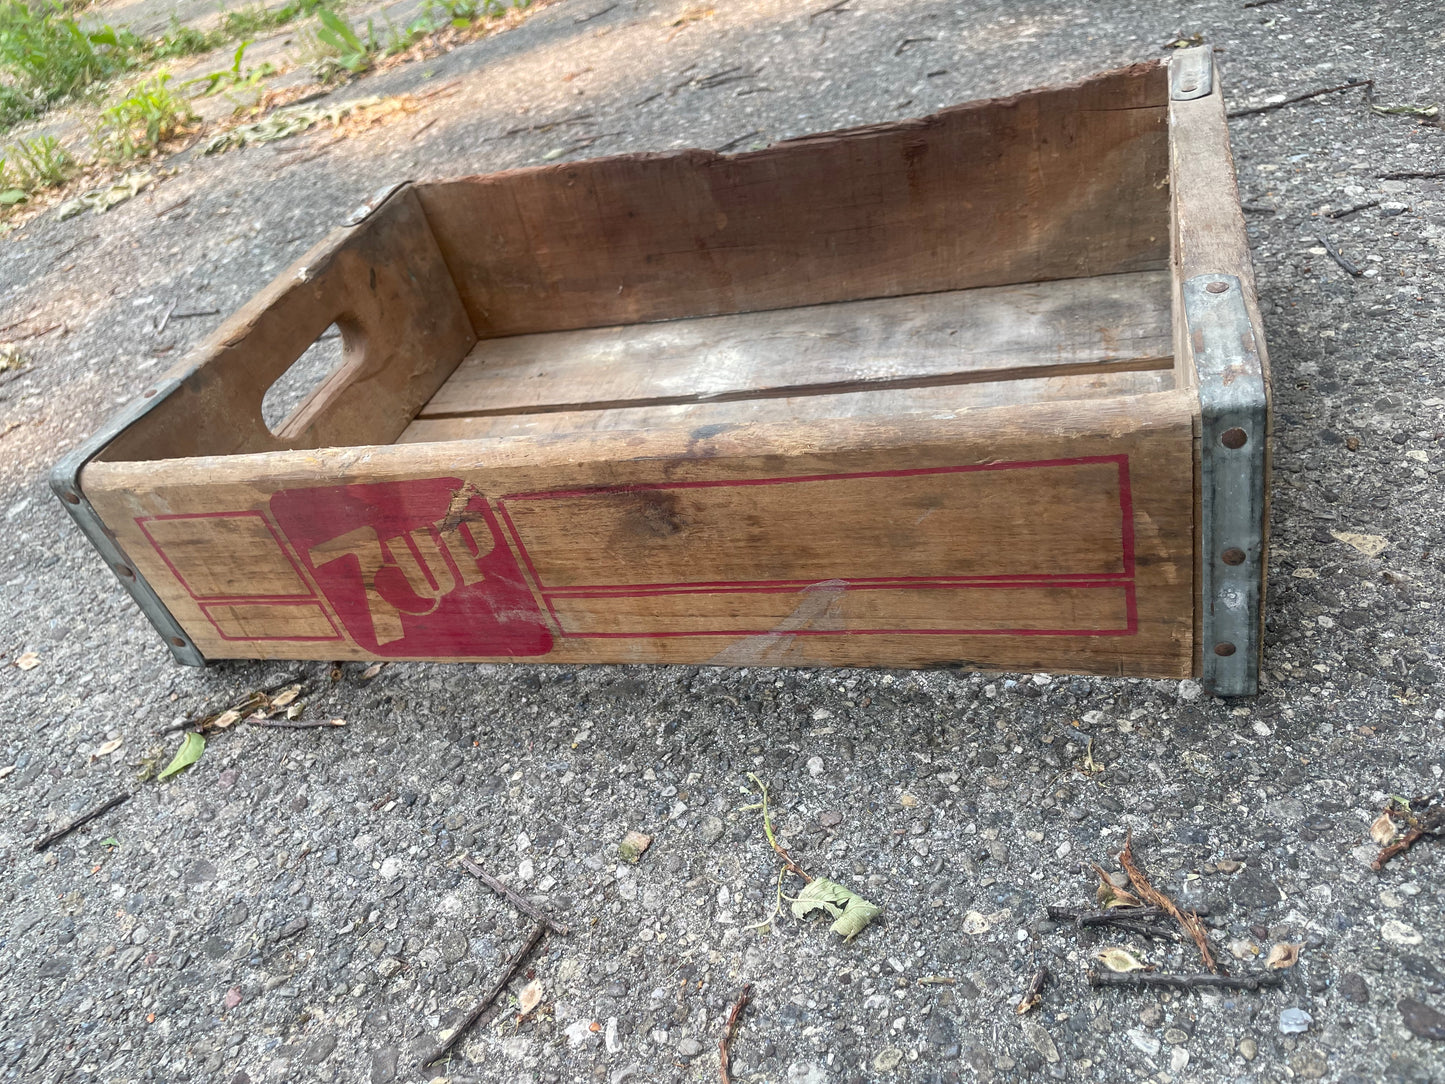 7-UP Vintage Bottle Crate Box